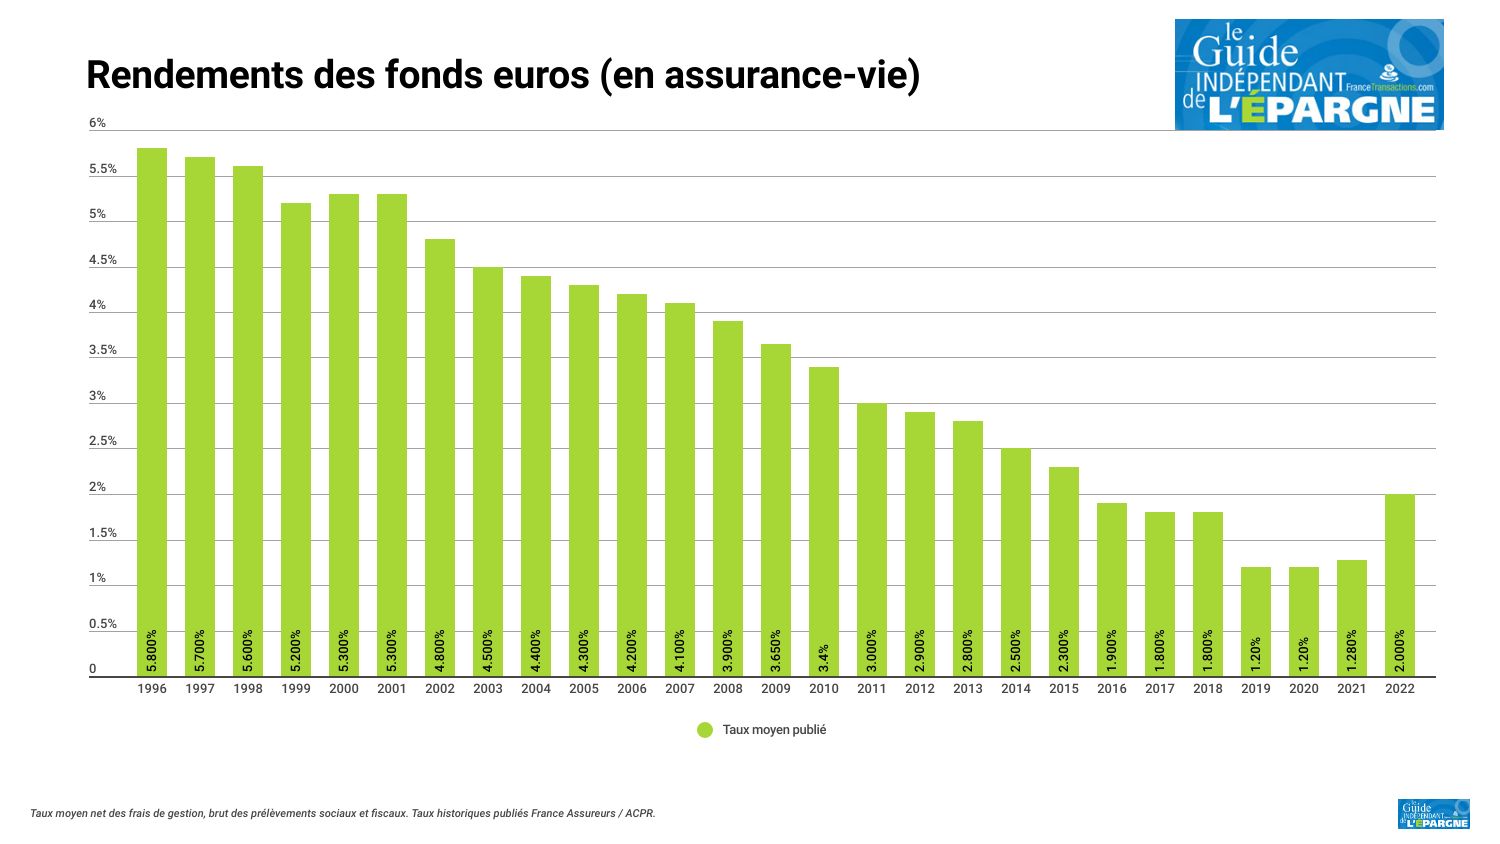 Taux de rendement annuel brut des fonds euros